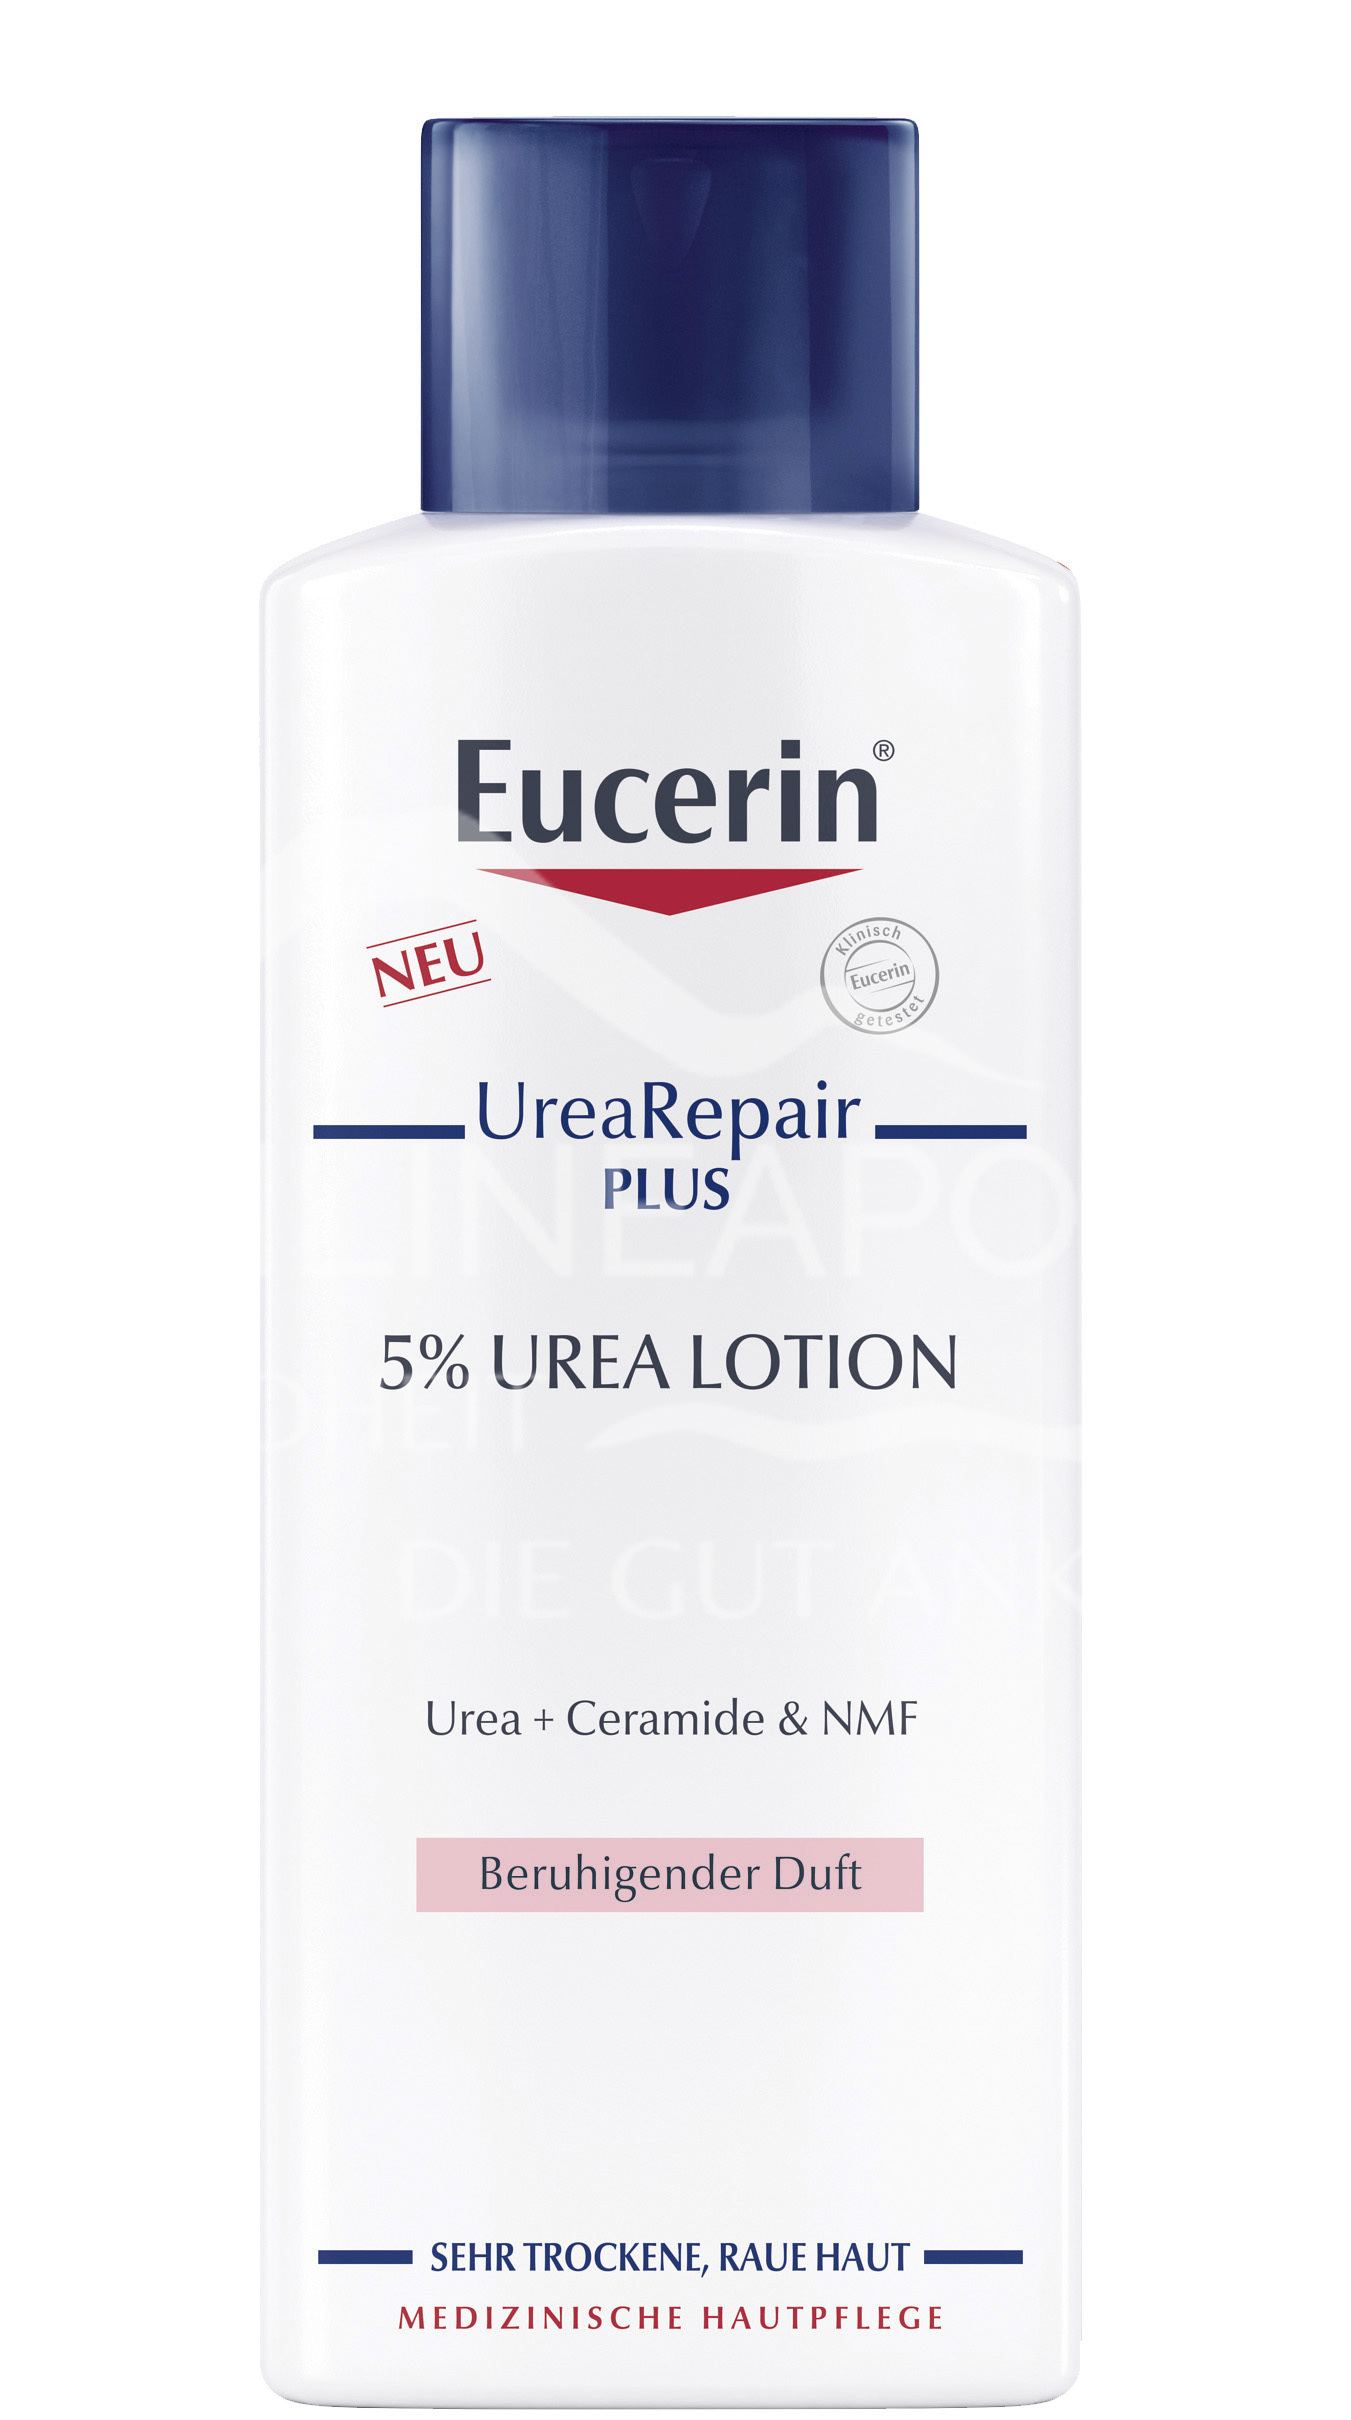 Eucerin® UreaRepair PLUS Lotion 5% mit beruhigendem Duft